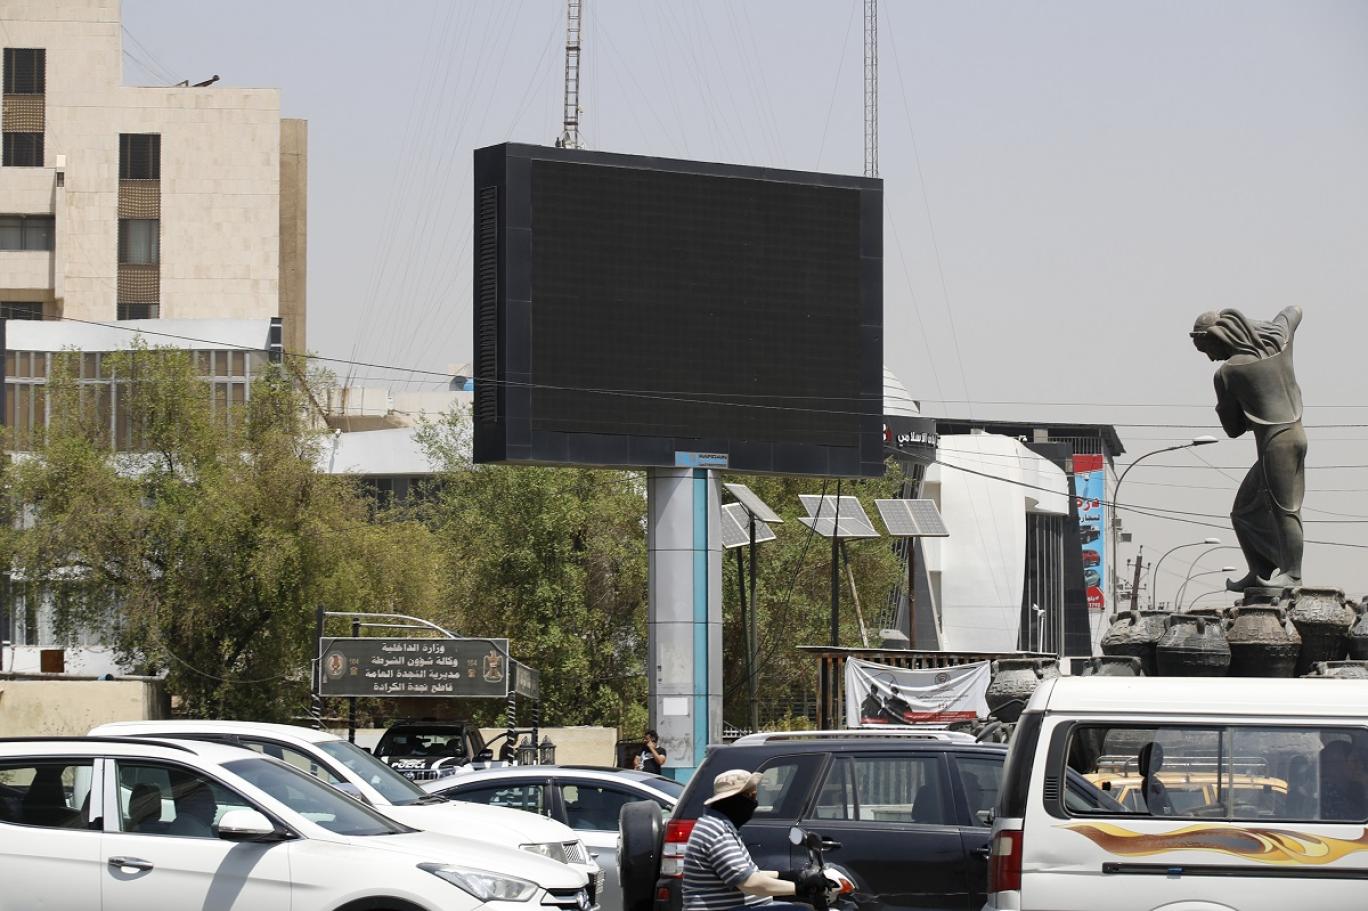 الحبس الشديد بحق "هاكر" بث مشاهد "اباحية" على شاشة اعلانات ببغداد